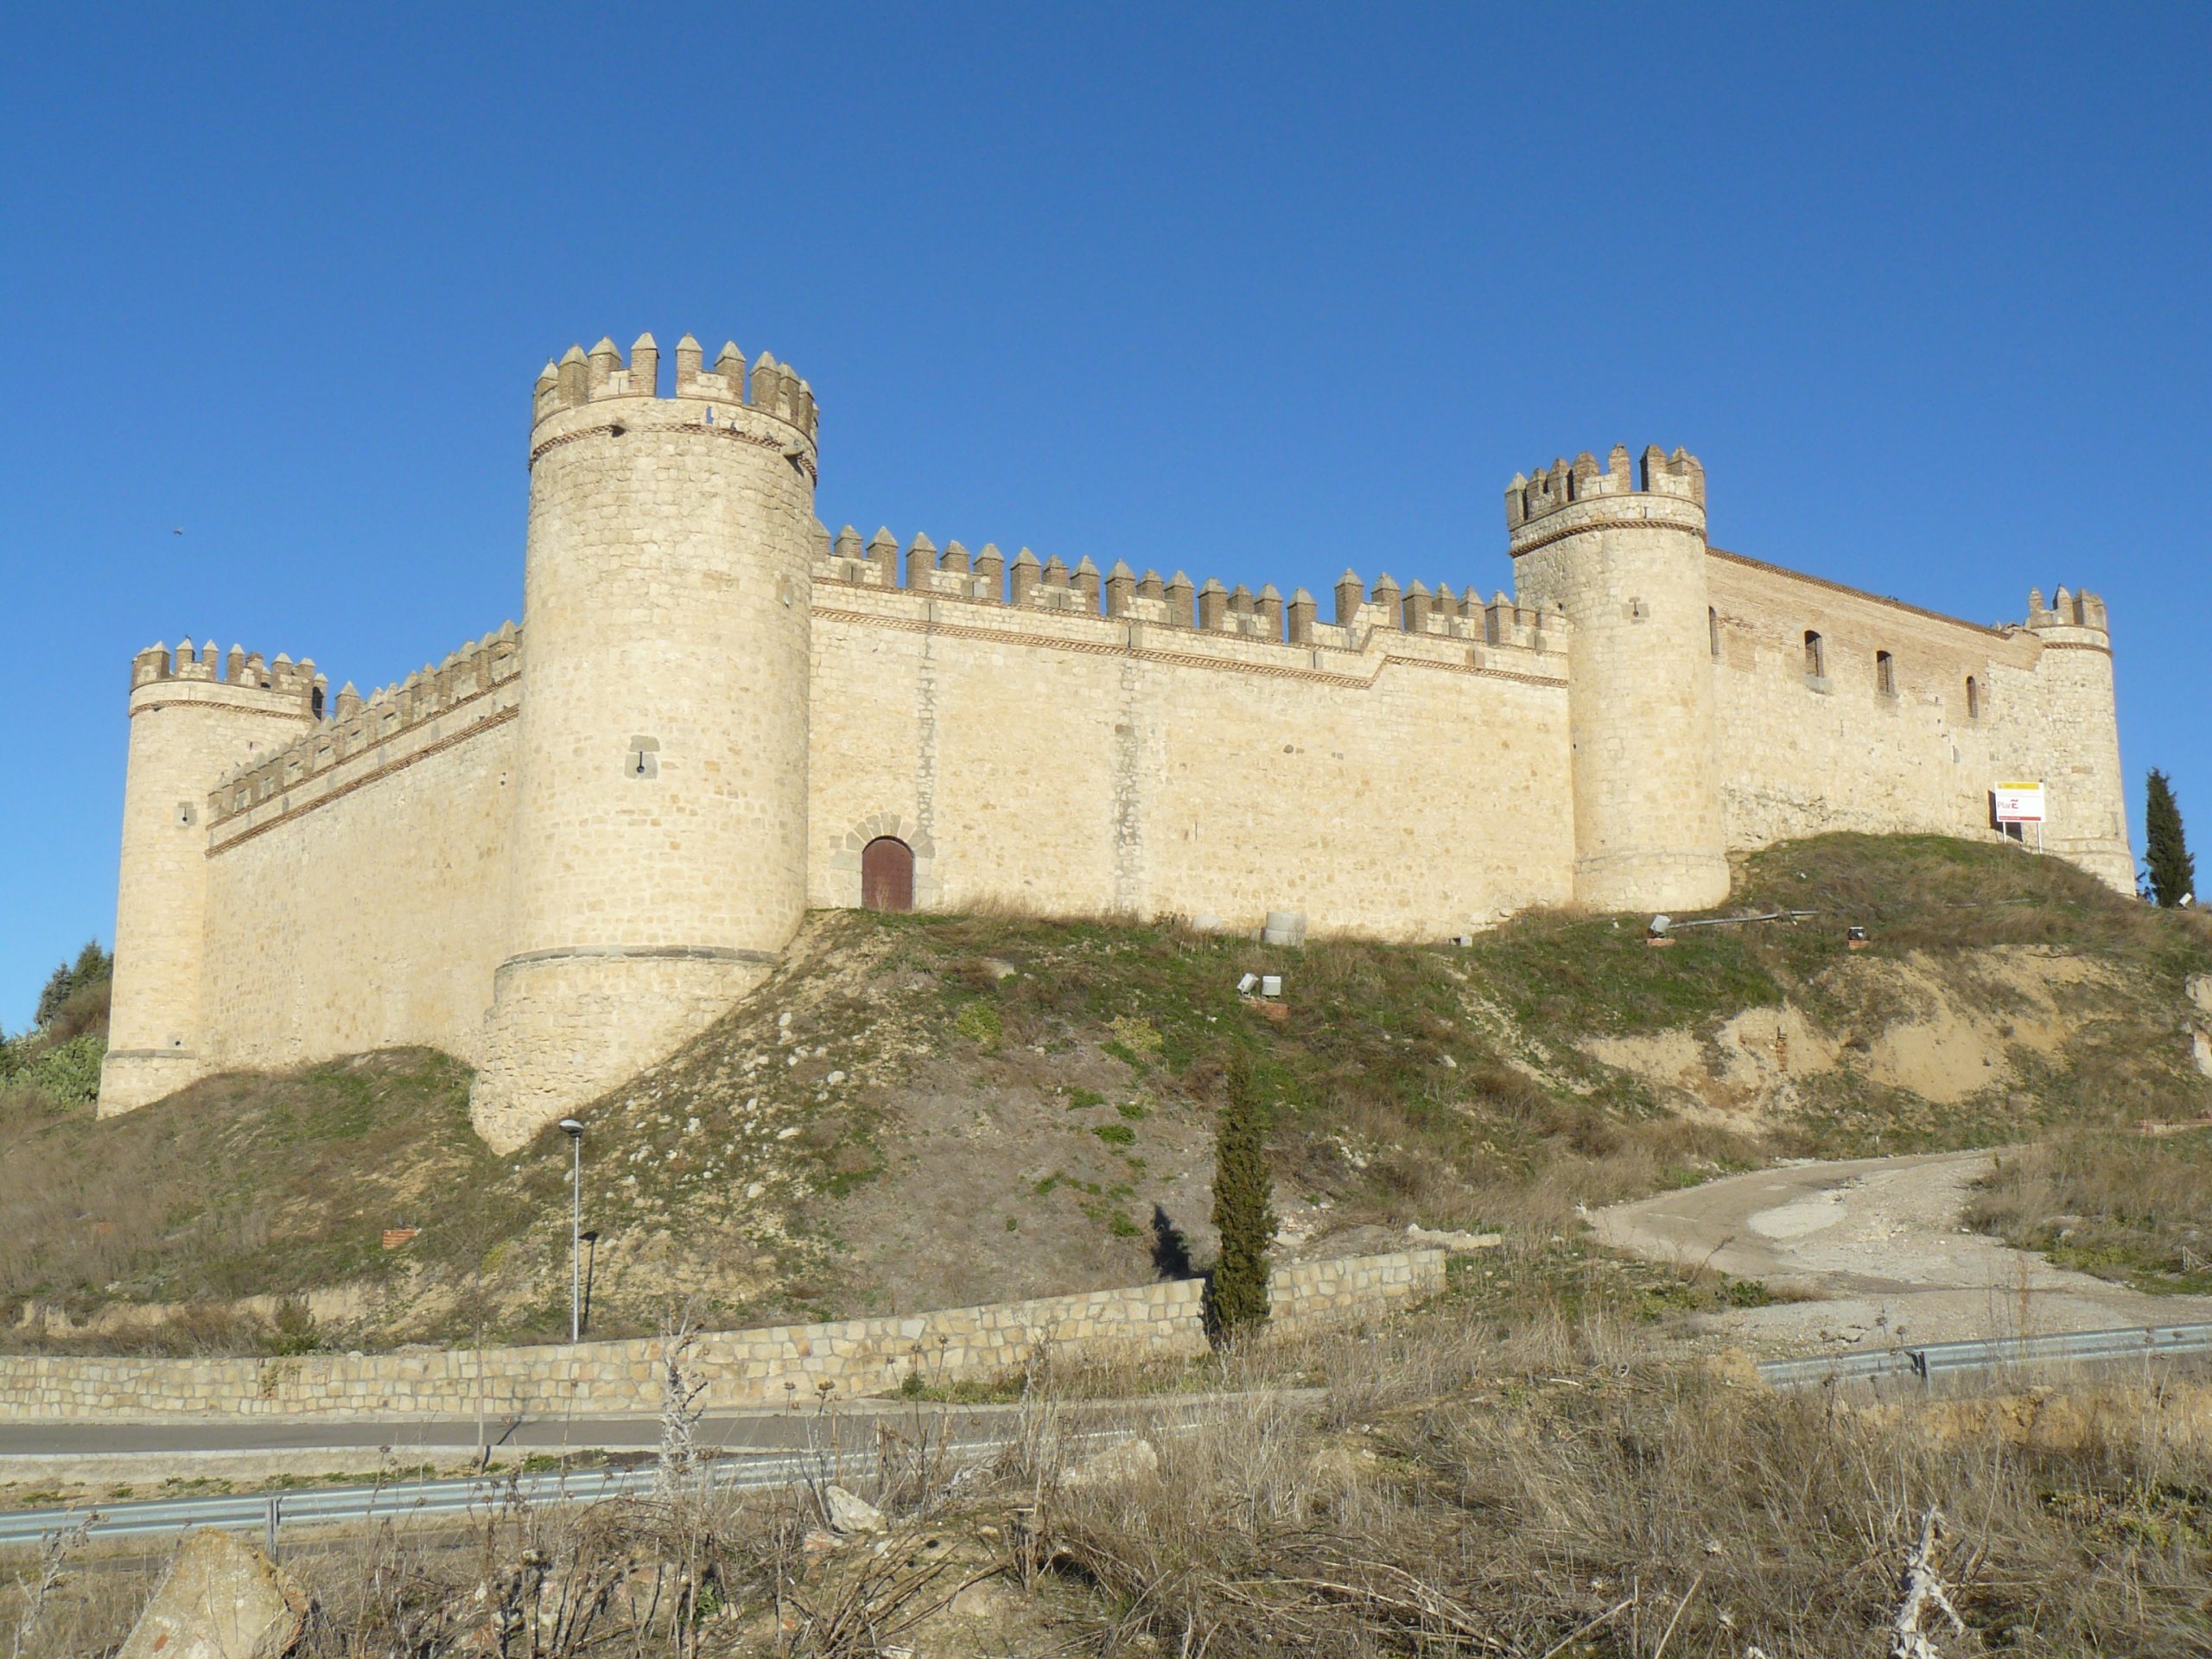 Ruta de los castillos: castillo de maqueda